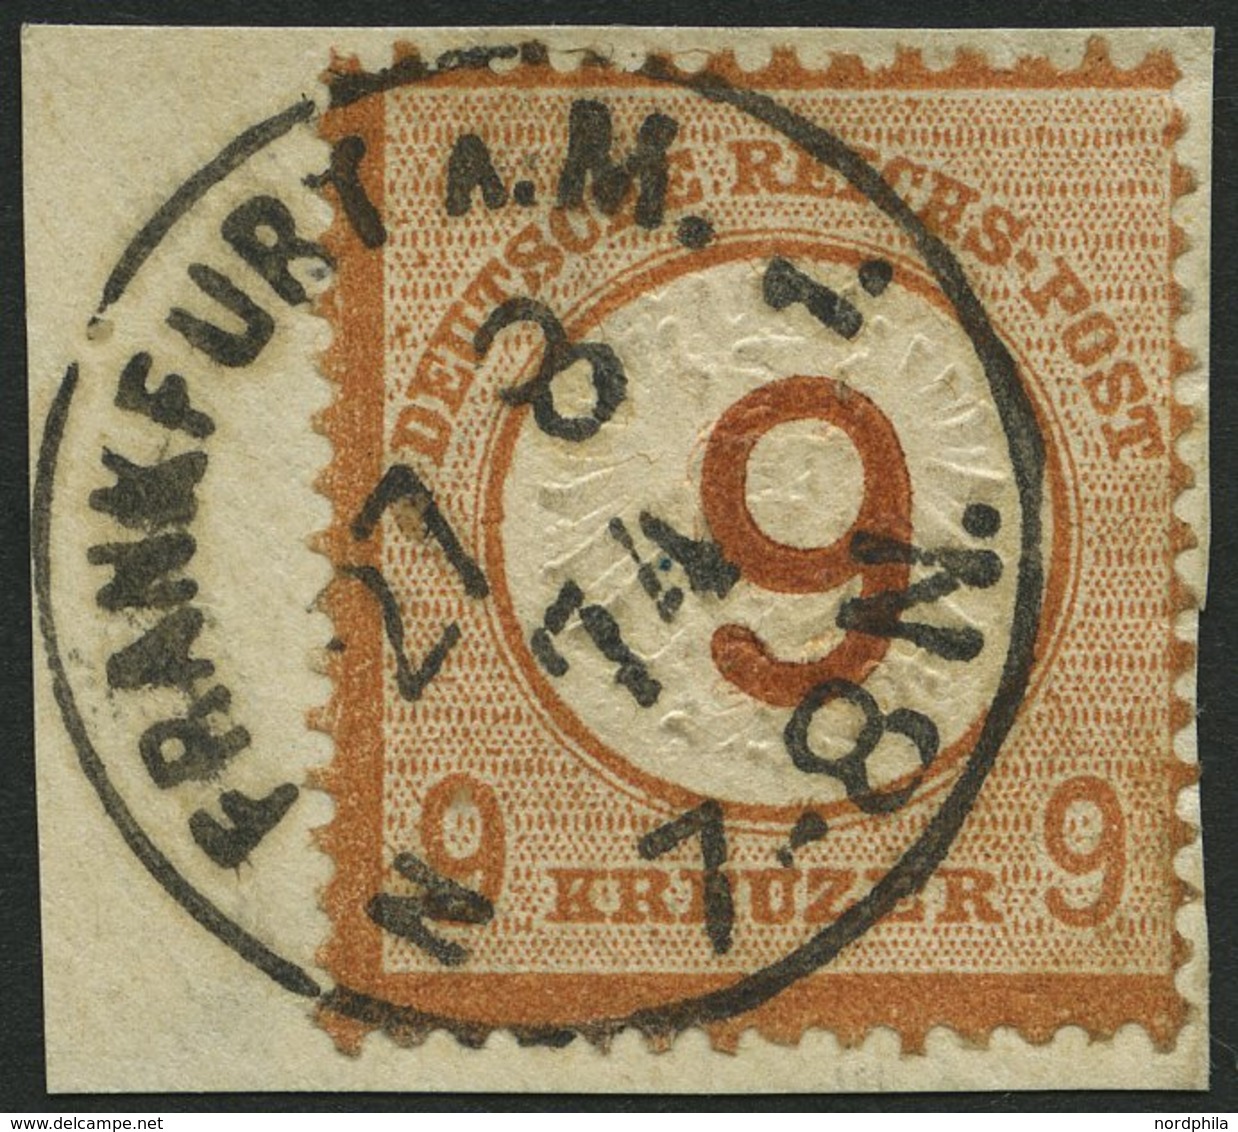 Dt. Reich 30 BrfStk, 1874, 9 Auf 9 Kr. Braunorange, K1 FRANKFURT A.M., Prachtbriefstück, Fotoattest Brugger, Mi. (600.-) - Oblitérés